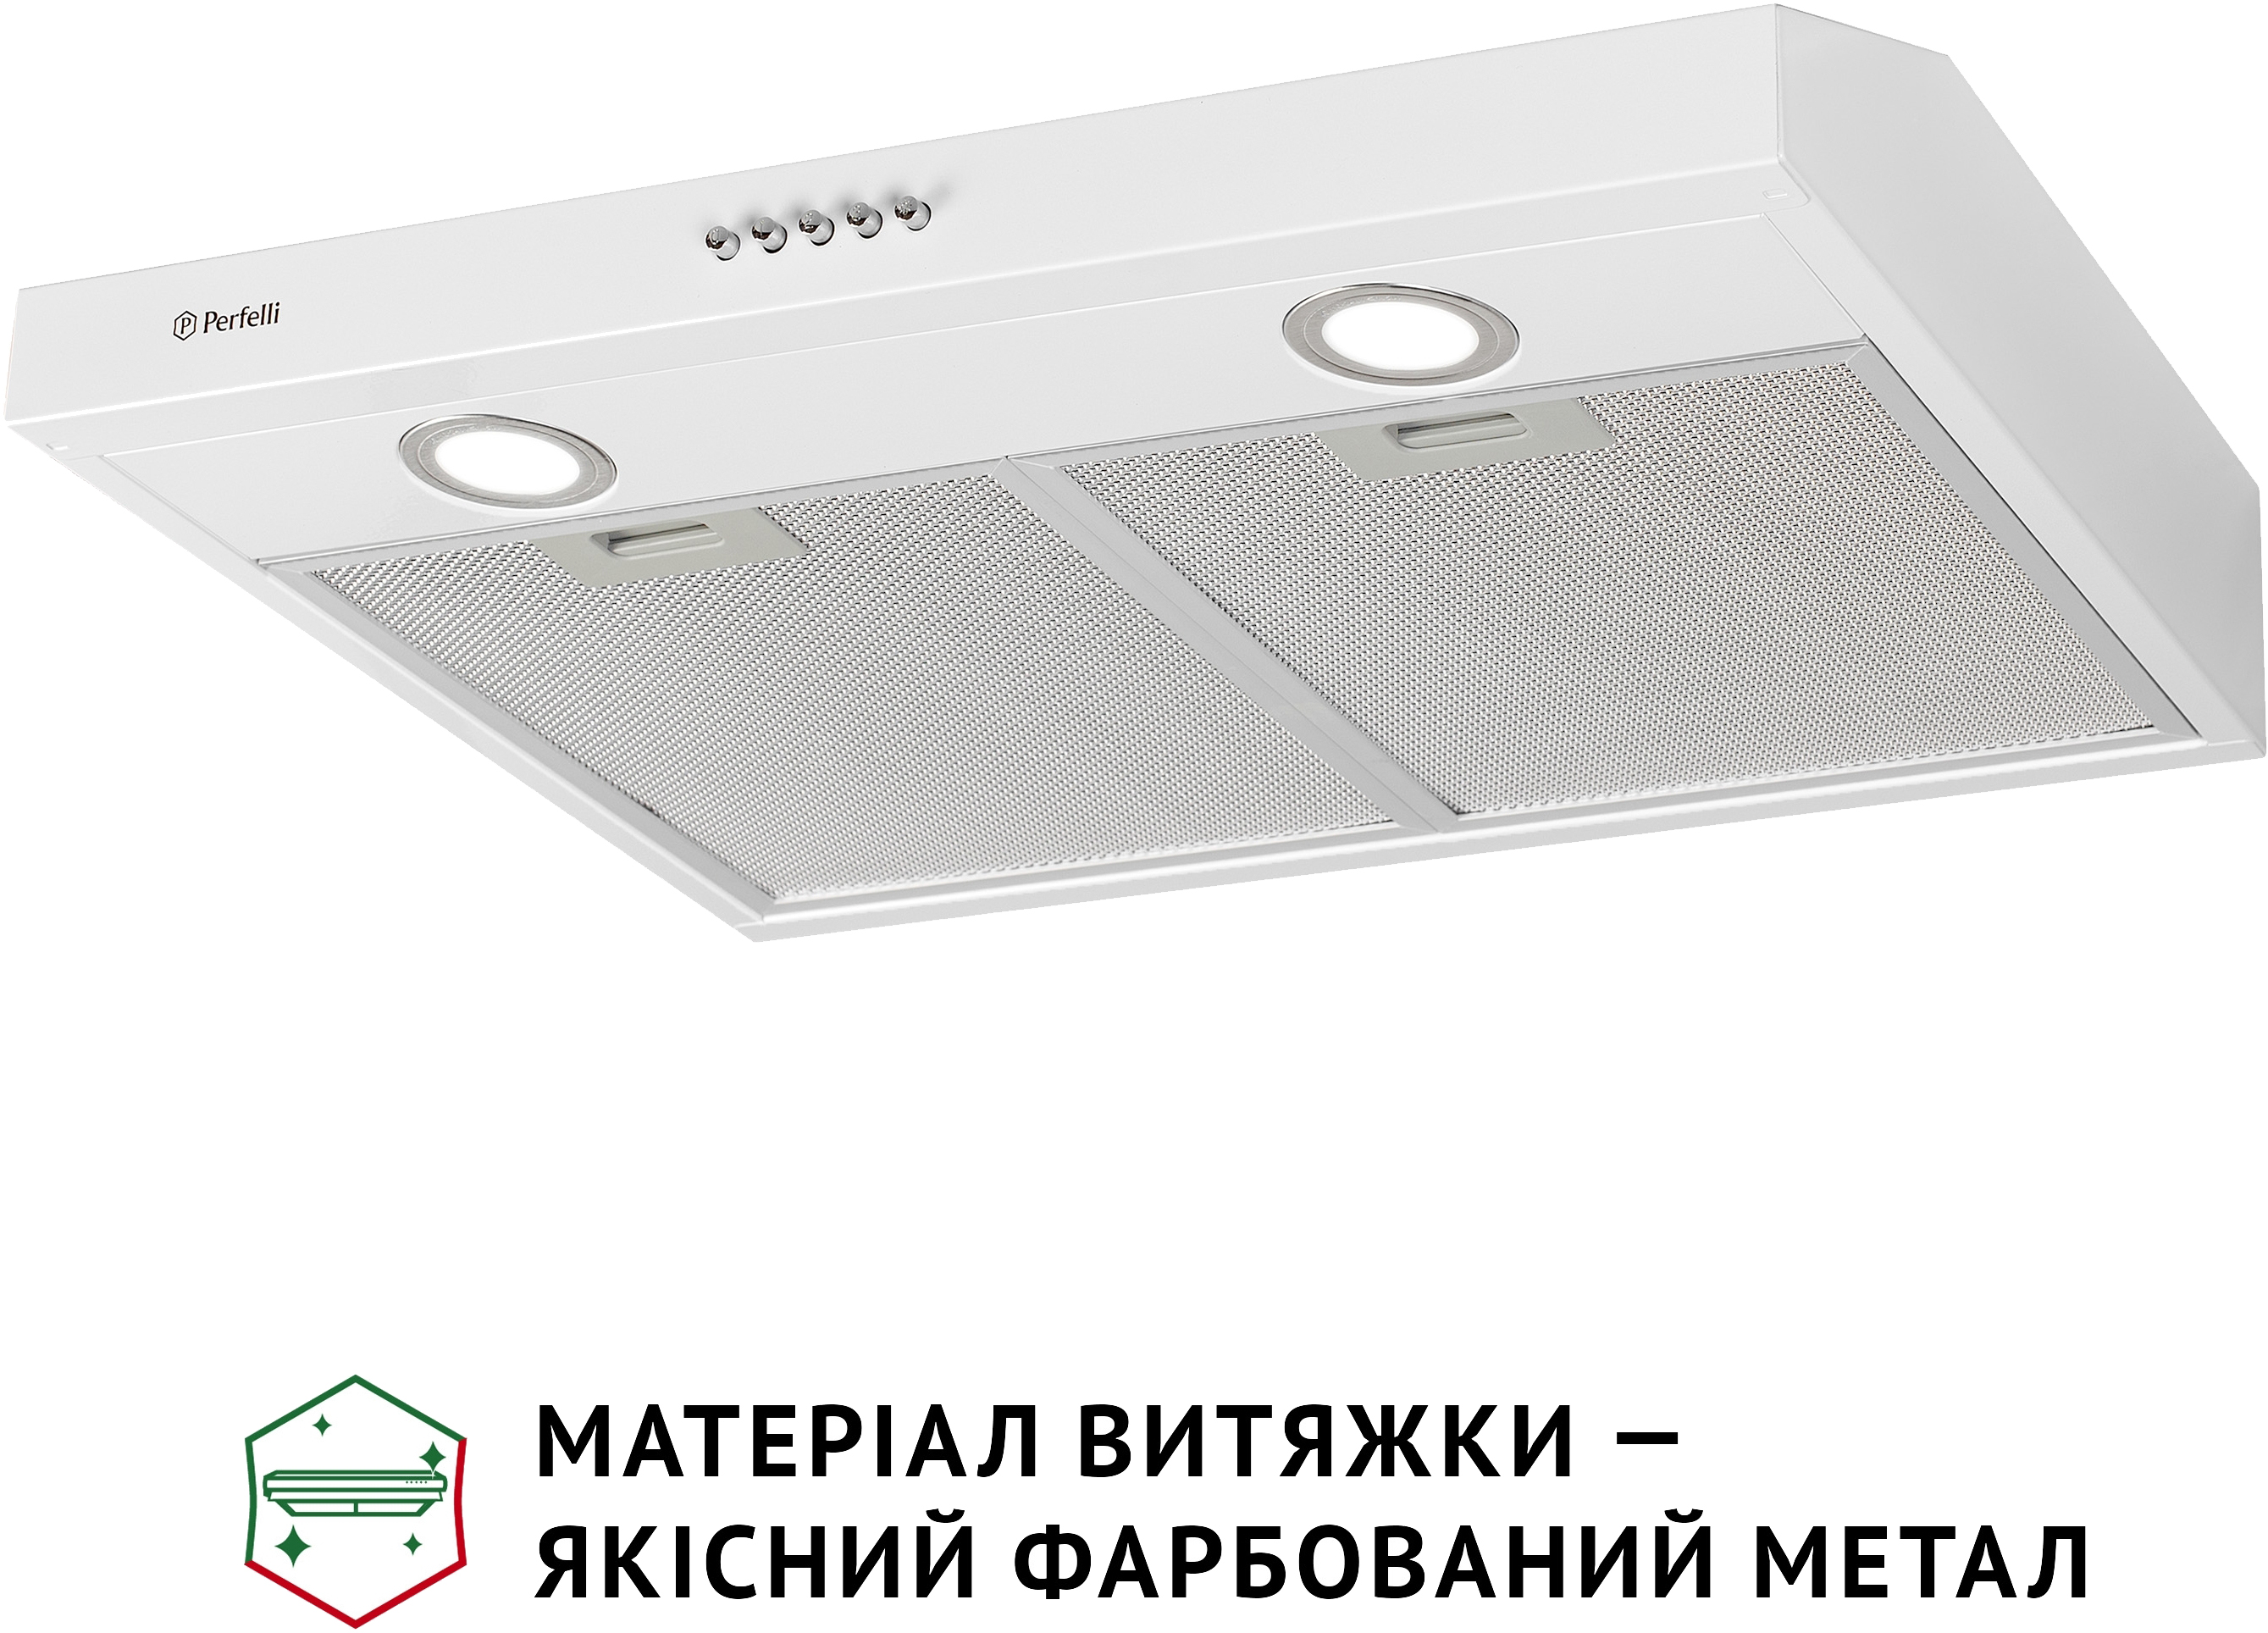 продаём Perfelli PL 6002 W LED в Украине - фото 4